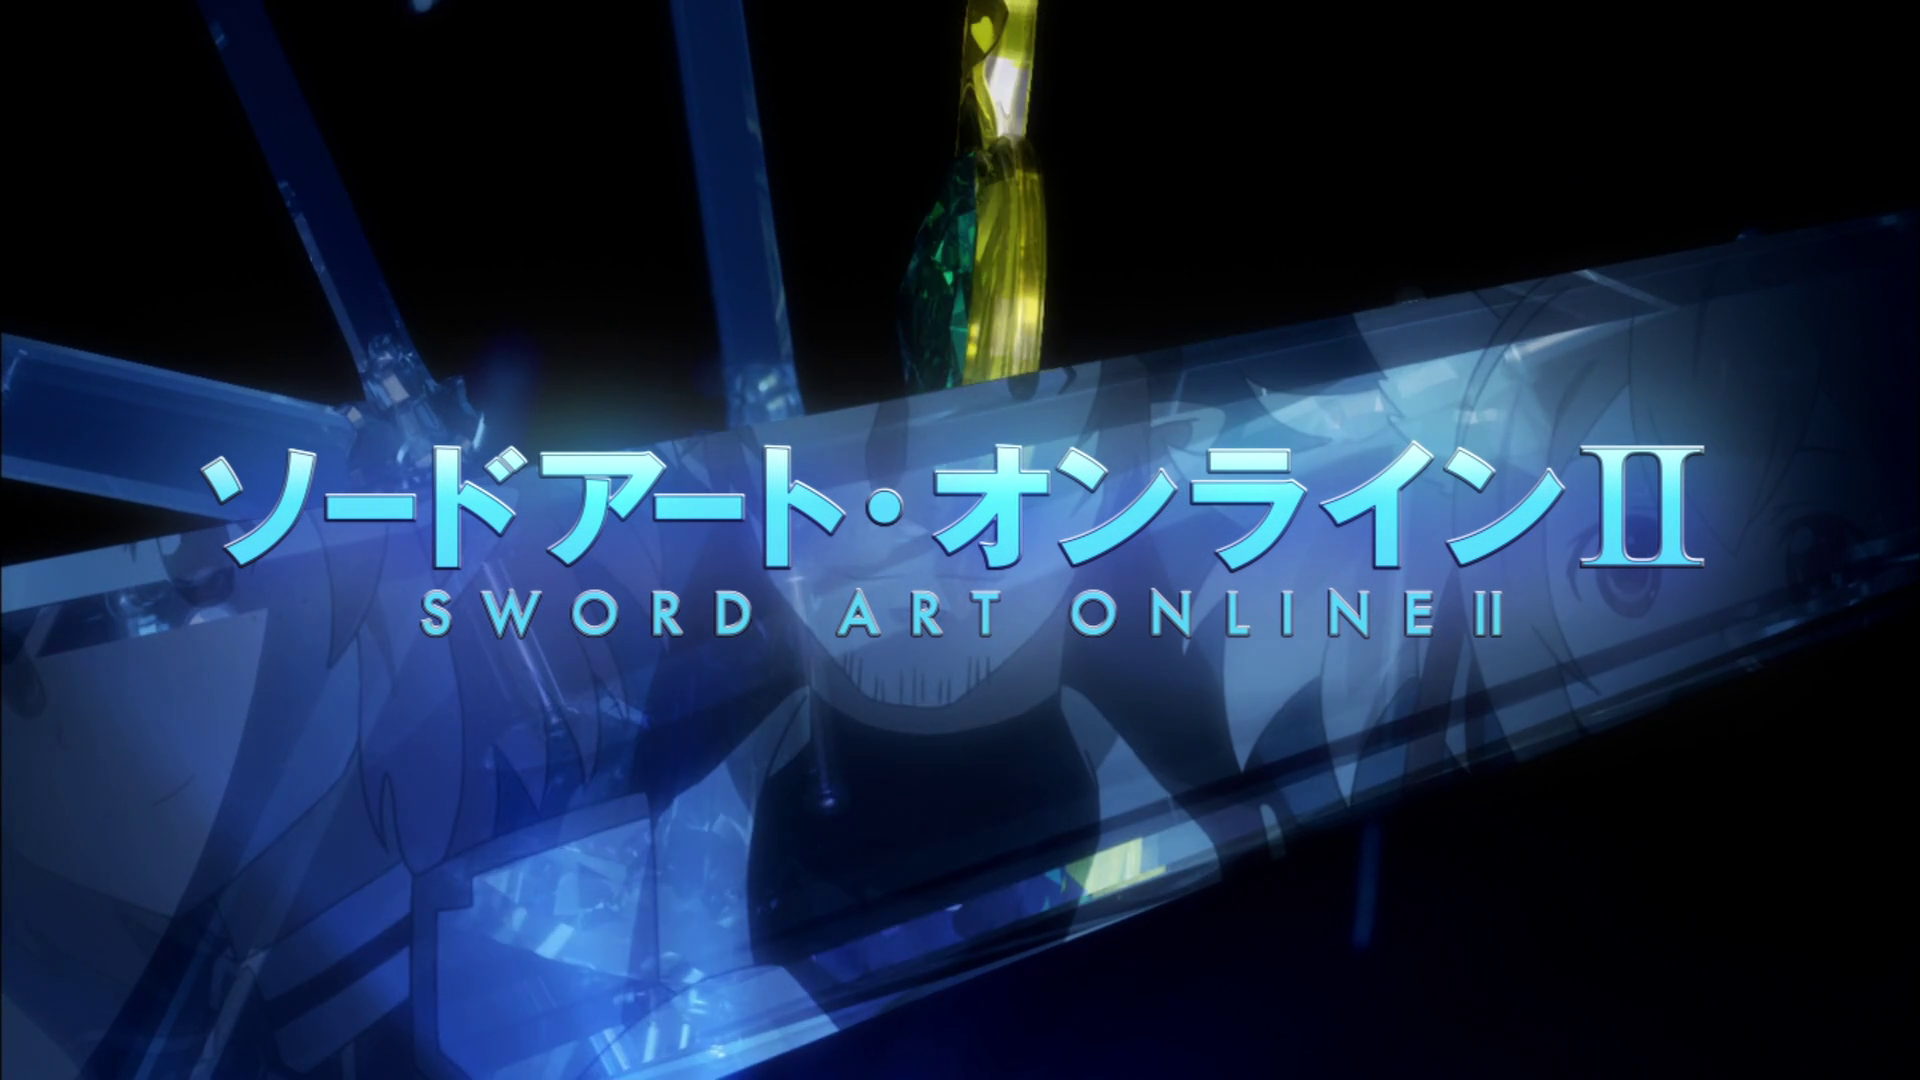 Sword Art Online Ii Episode 15 Koekara